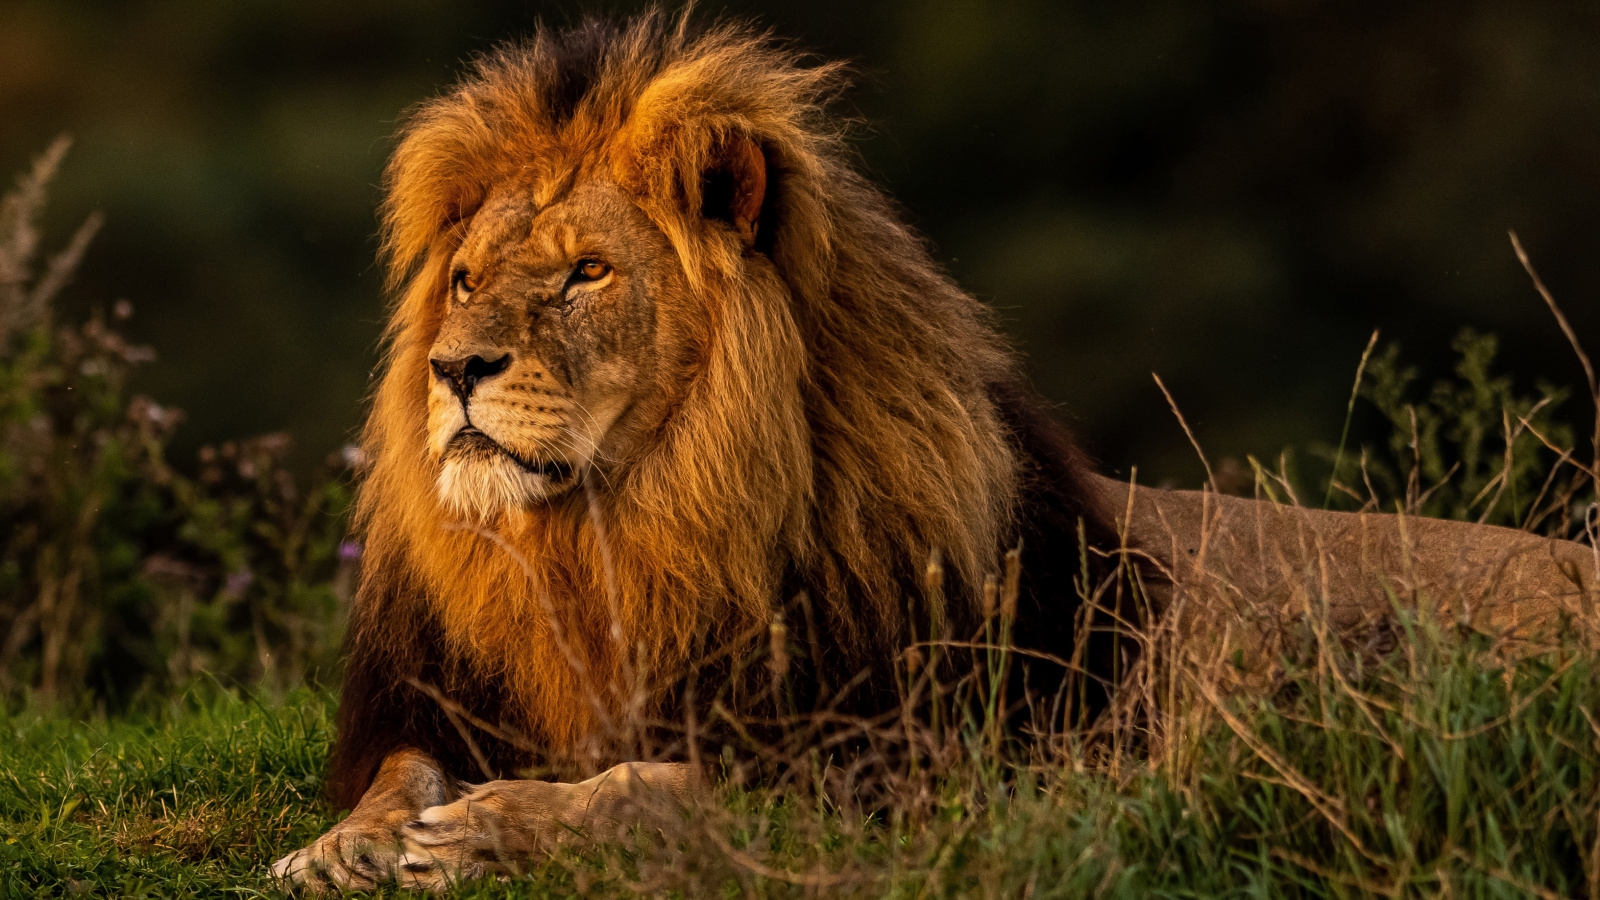 Forest king lion screenshot #1 1600x900